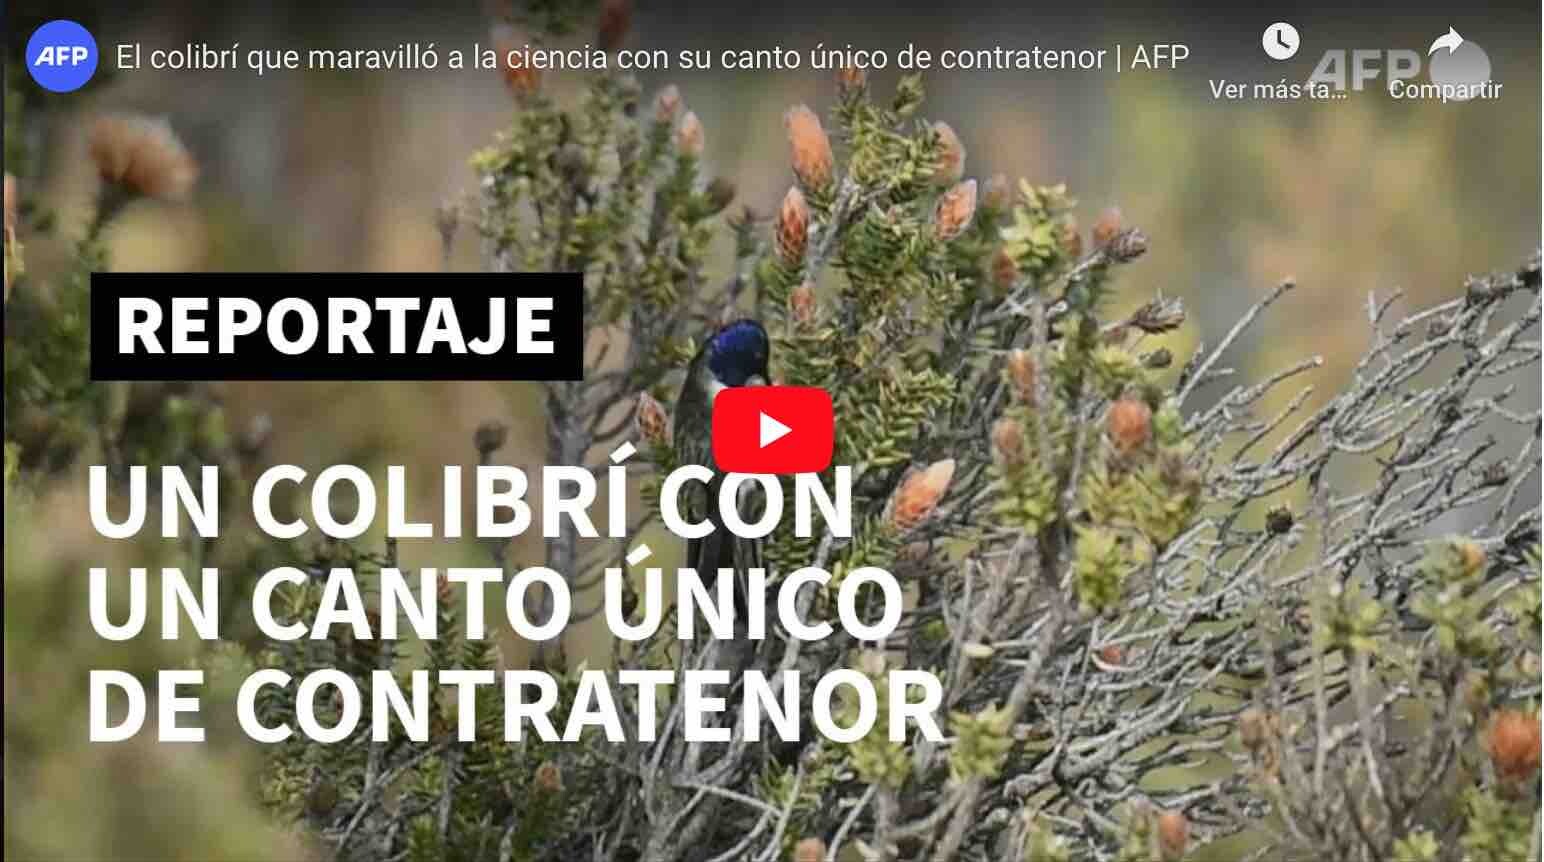 VIDEO: MUY INTERESANTE – El colibrí del Chimborazo entona las notas más agudas del mundo.